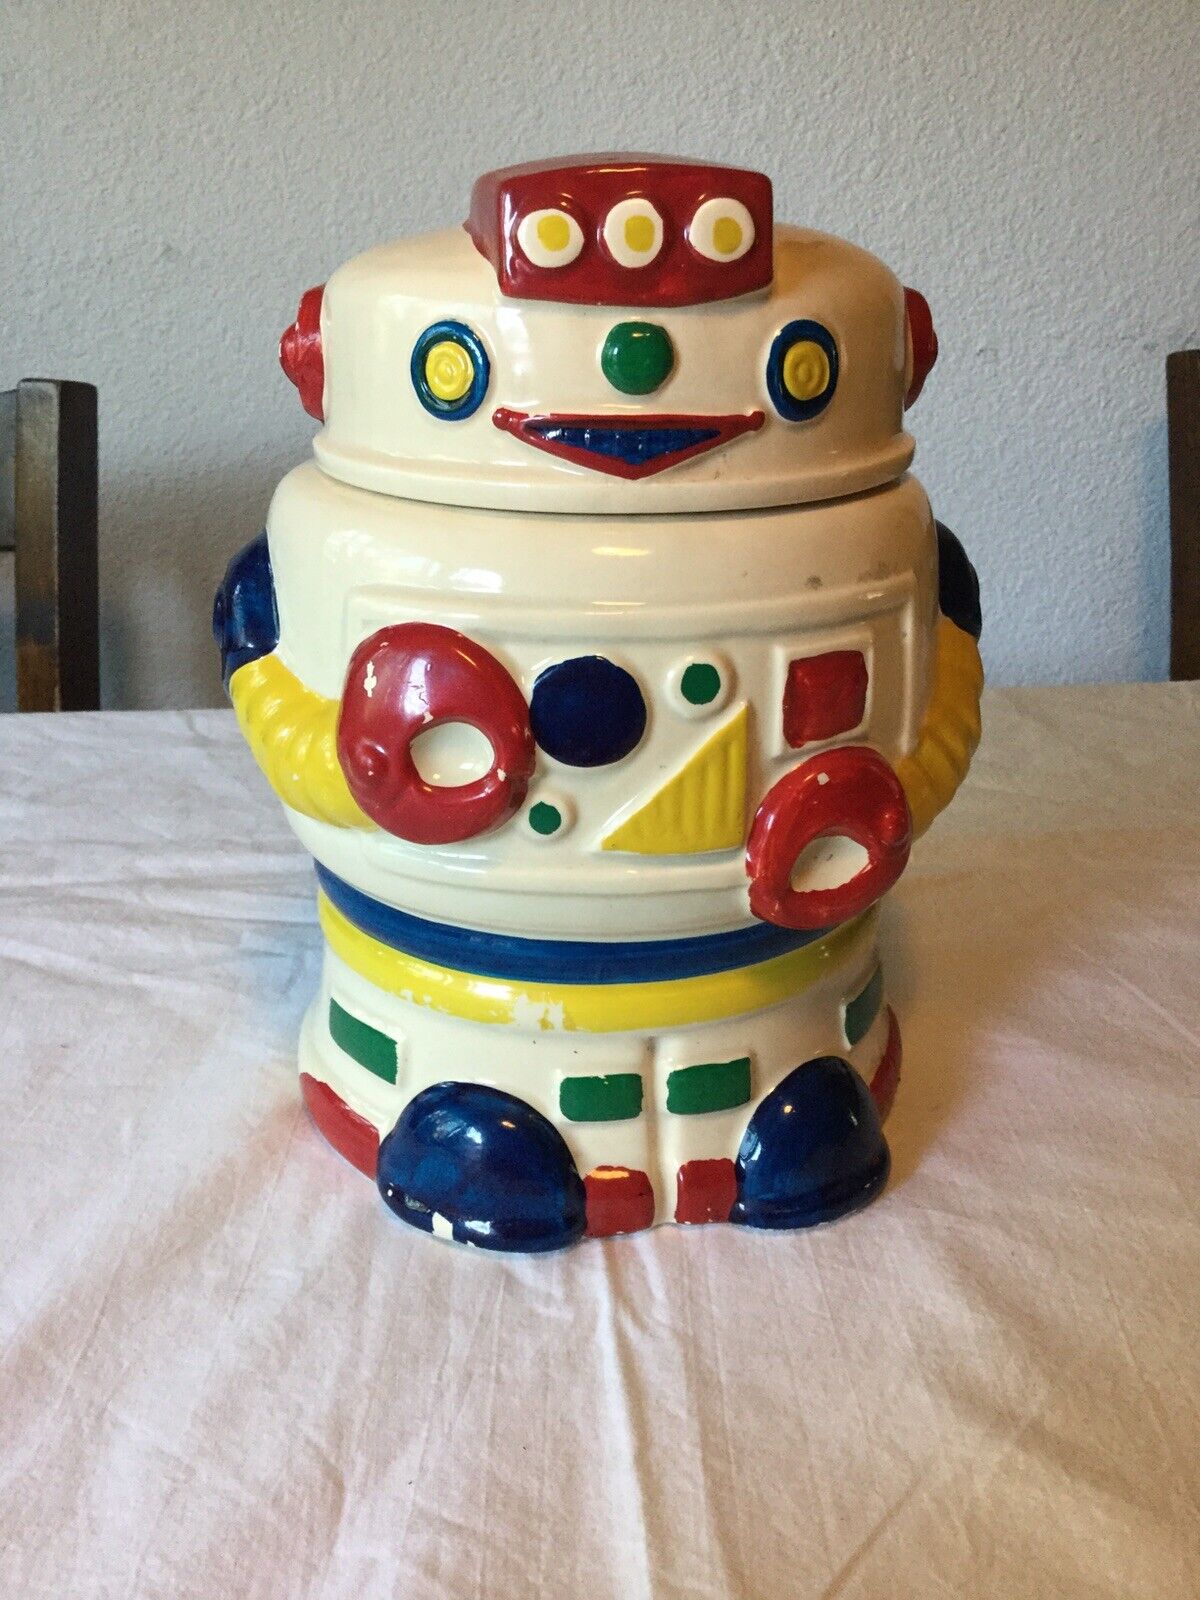 Vintage WhiteBot Robot Ceramic Cookie Jar Taylor NG Win Japan San Francisco 1985